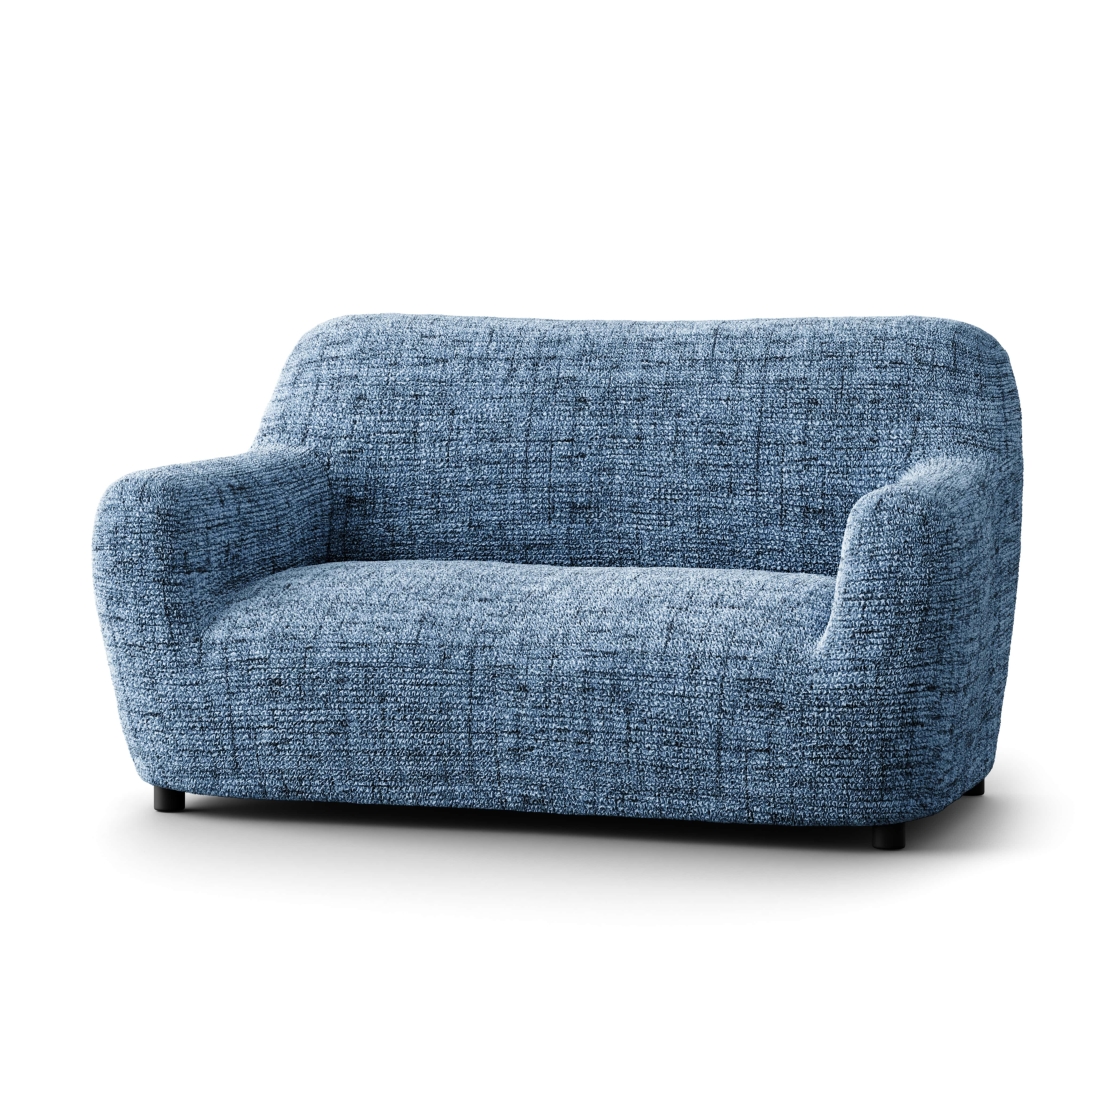 כיסוי לספה לשניים ושלושה מושבים בצבע כחול דגם ויטוריה